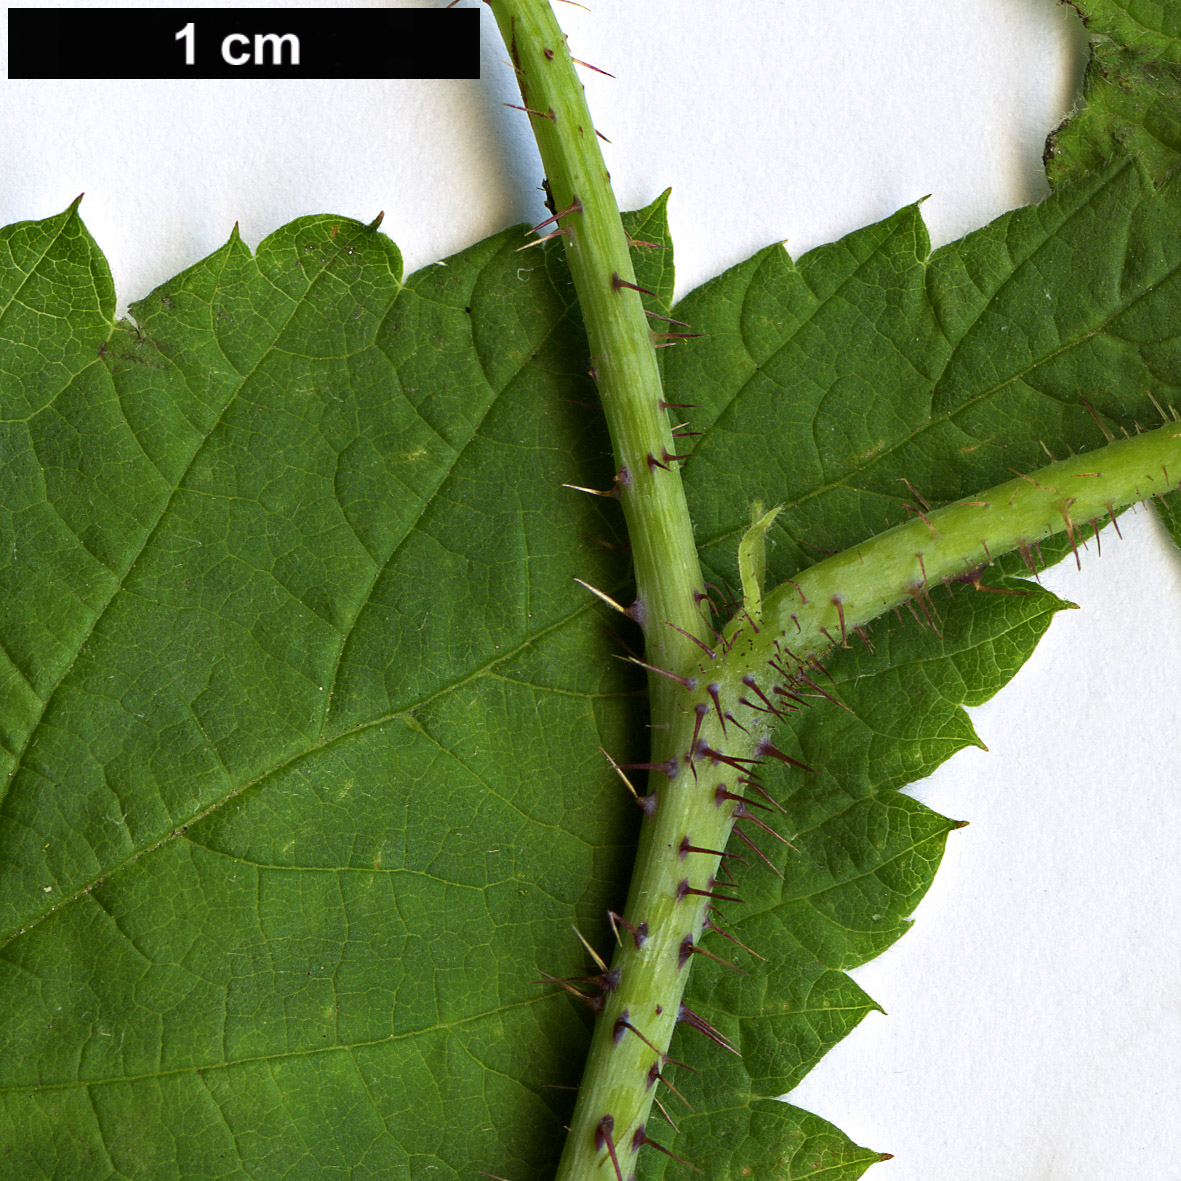 High resolution image: Family: Rosaceae - Genus: Rubus - Taxon: idaeus - SpeciesSub: subsp. strigosus